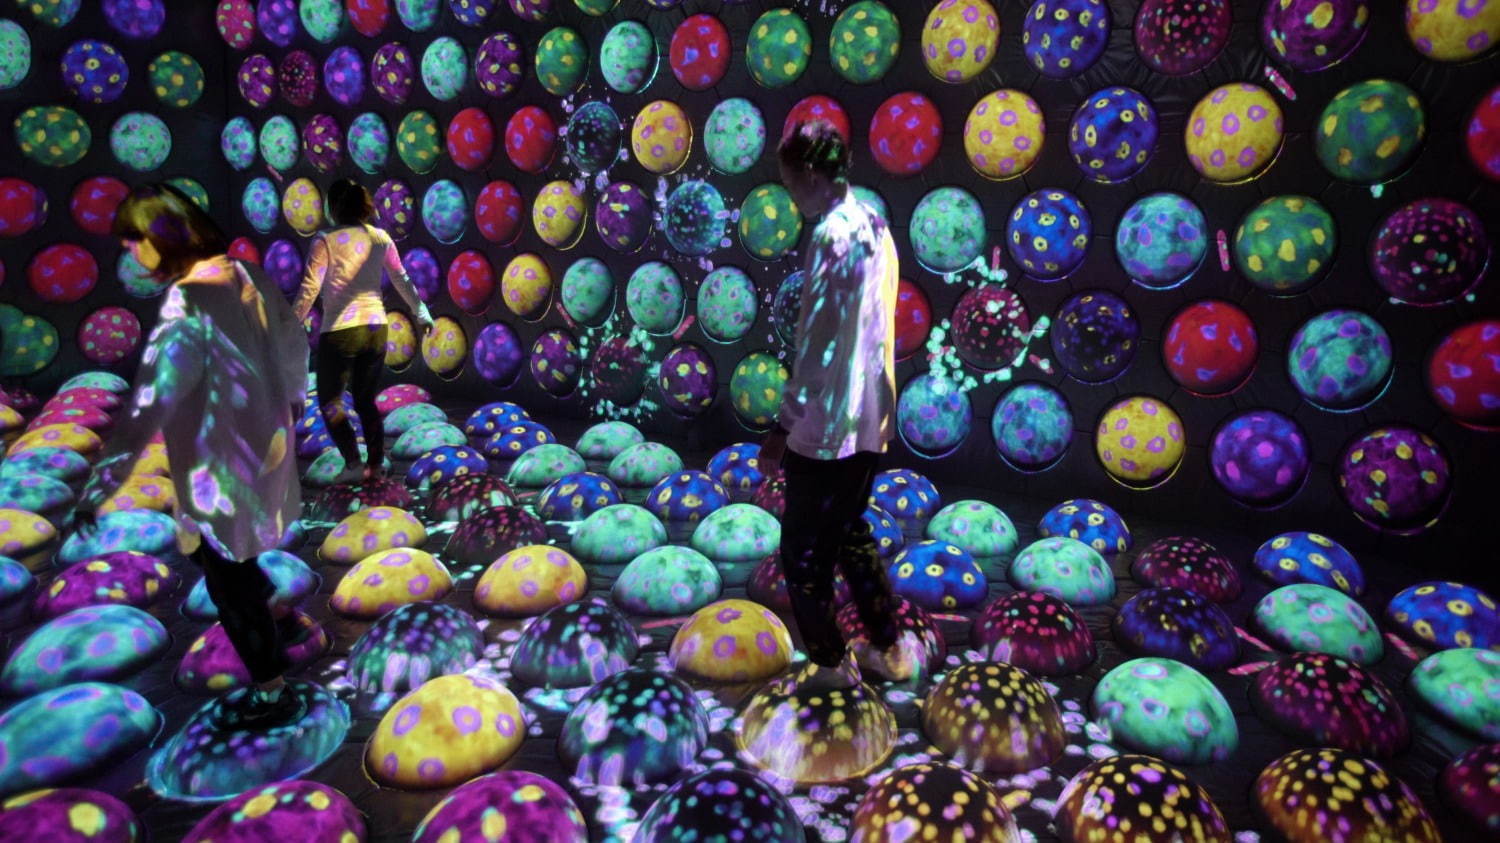 高速回転跳ね球のあおむしハウス / Rapidly Rotating Bouncing Sphere Caterpillar House
teamLab, 2020-, Interactive Digital Installation, Sound: teamLab